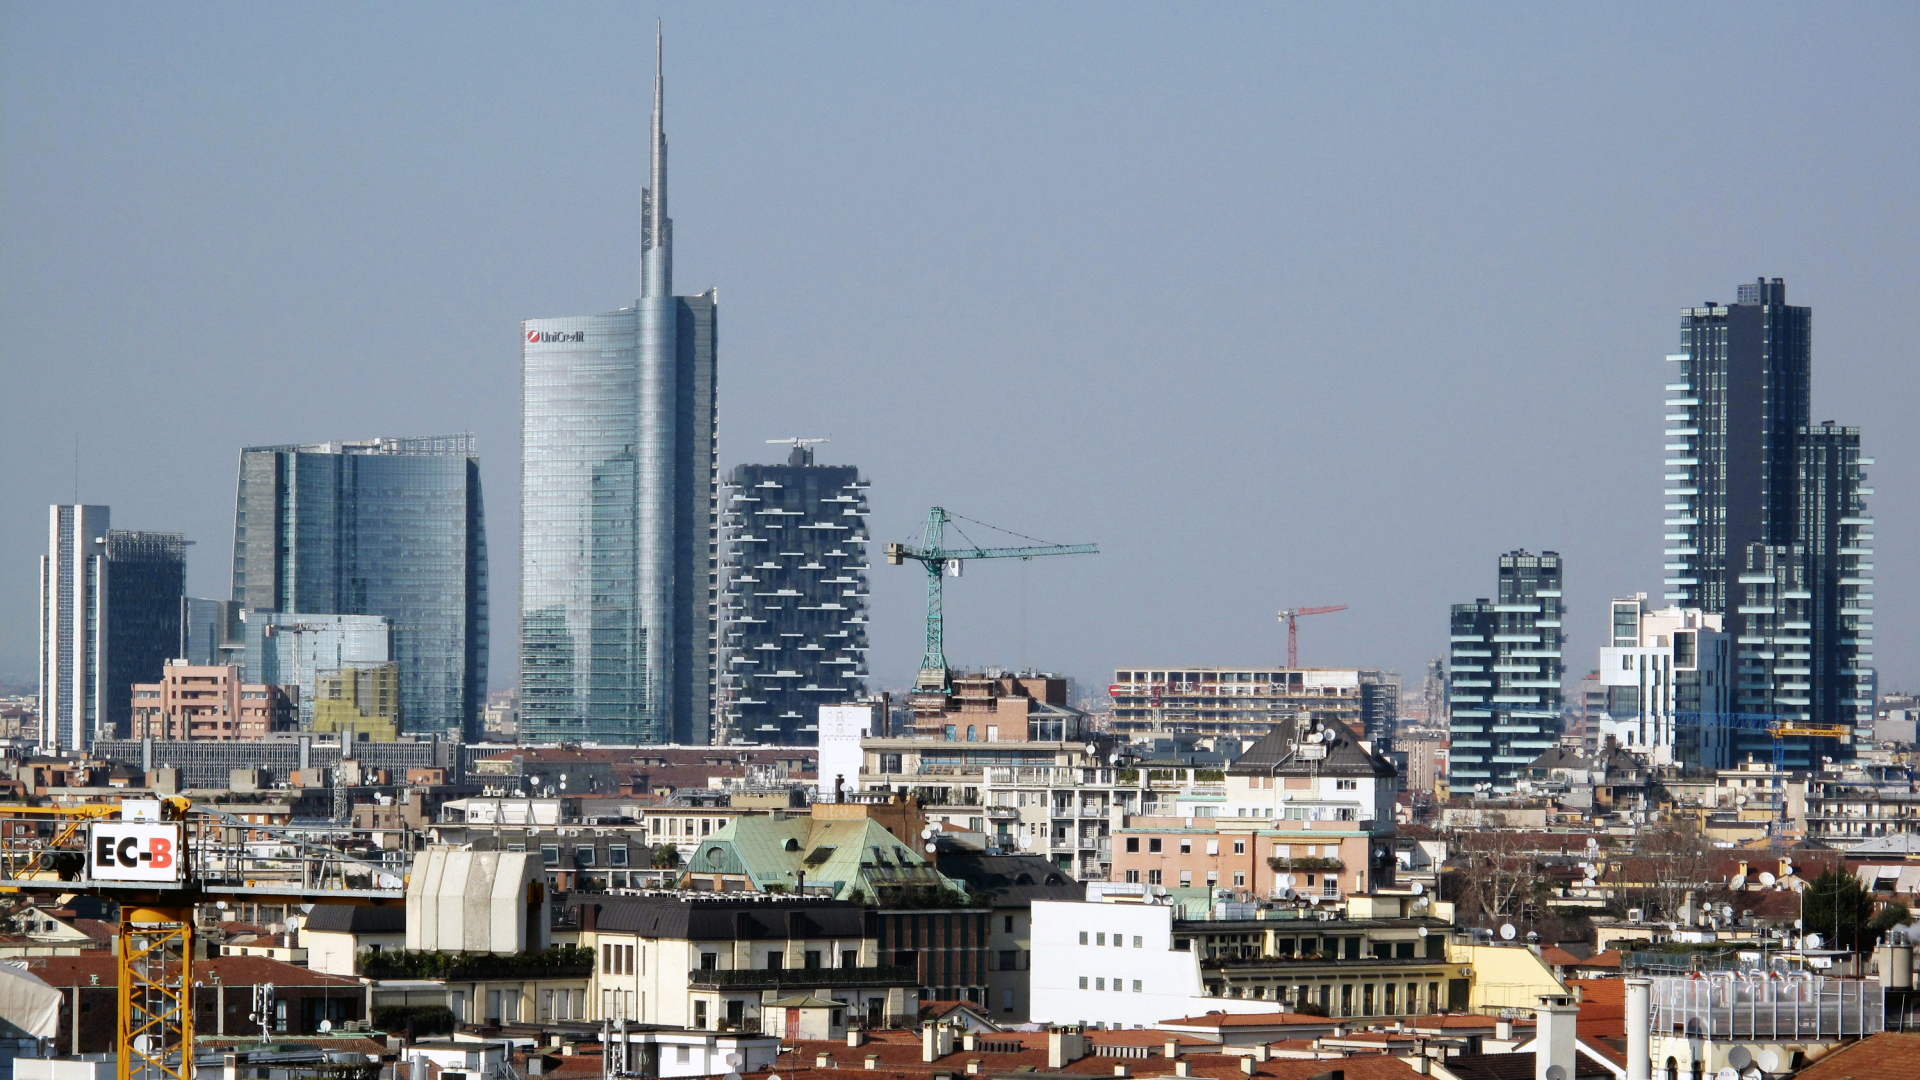 Blick auf Mailand - im höchsten Haus auf der linken Bildseite ist Unicredit untergebracht. | dpa